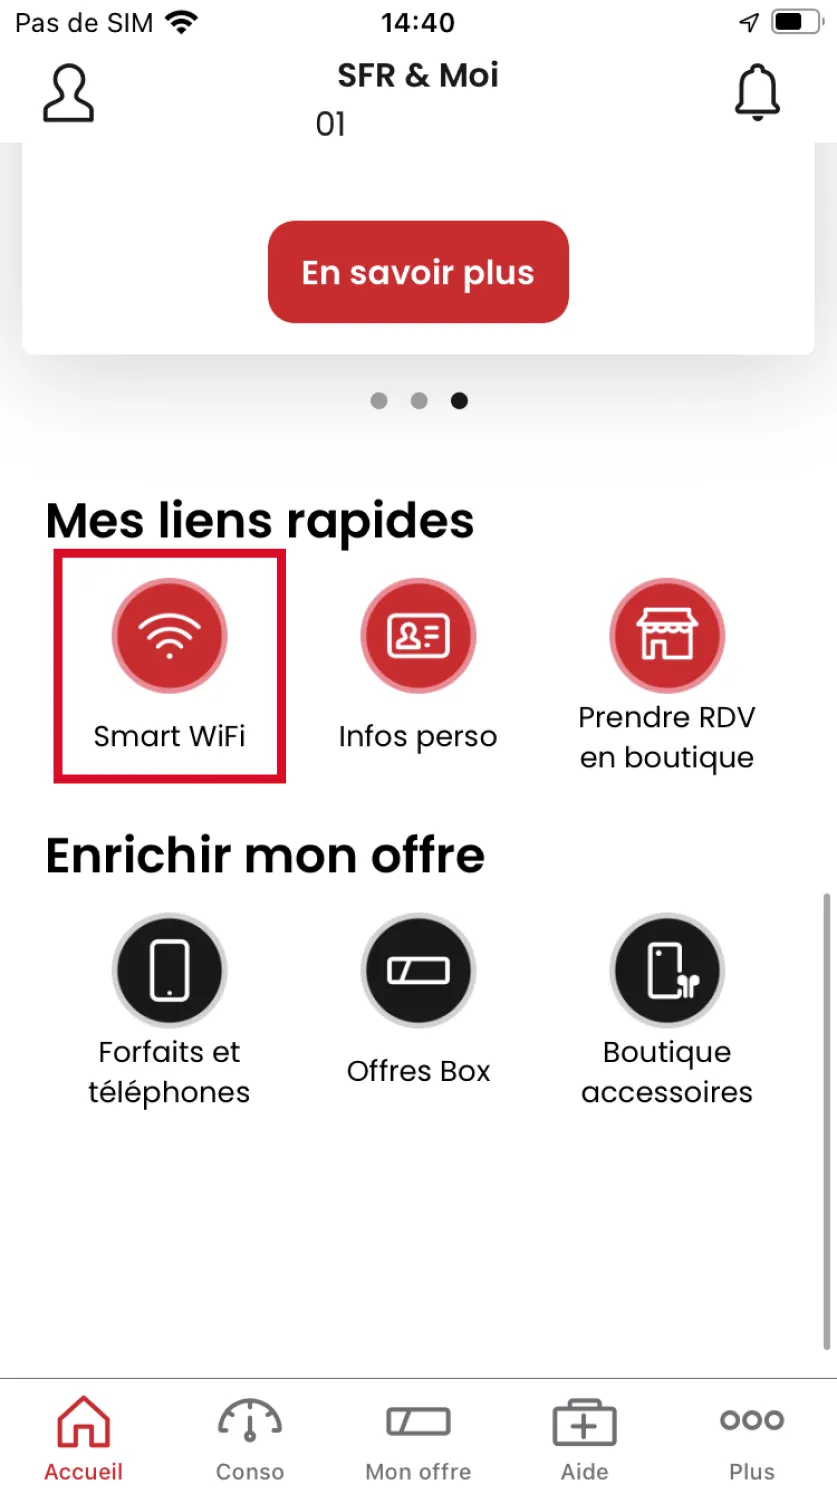 Smar Wifi se situe dans la section Mes raccourcis de votre application SFR & Moi 